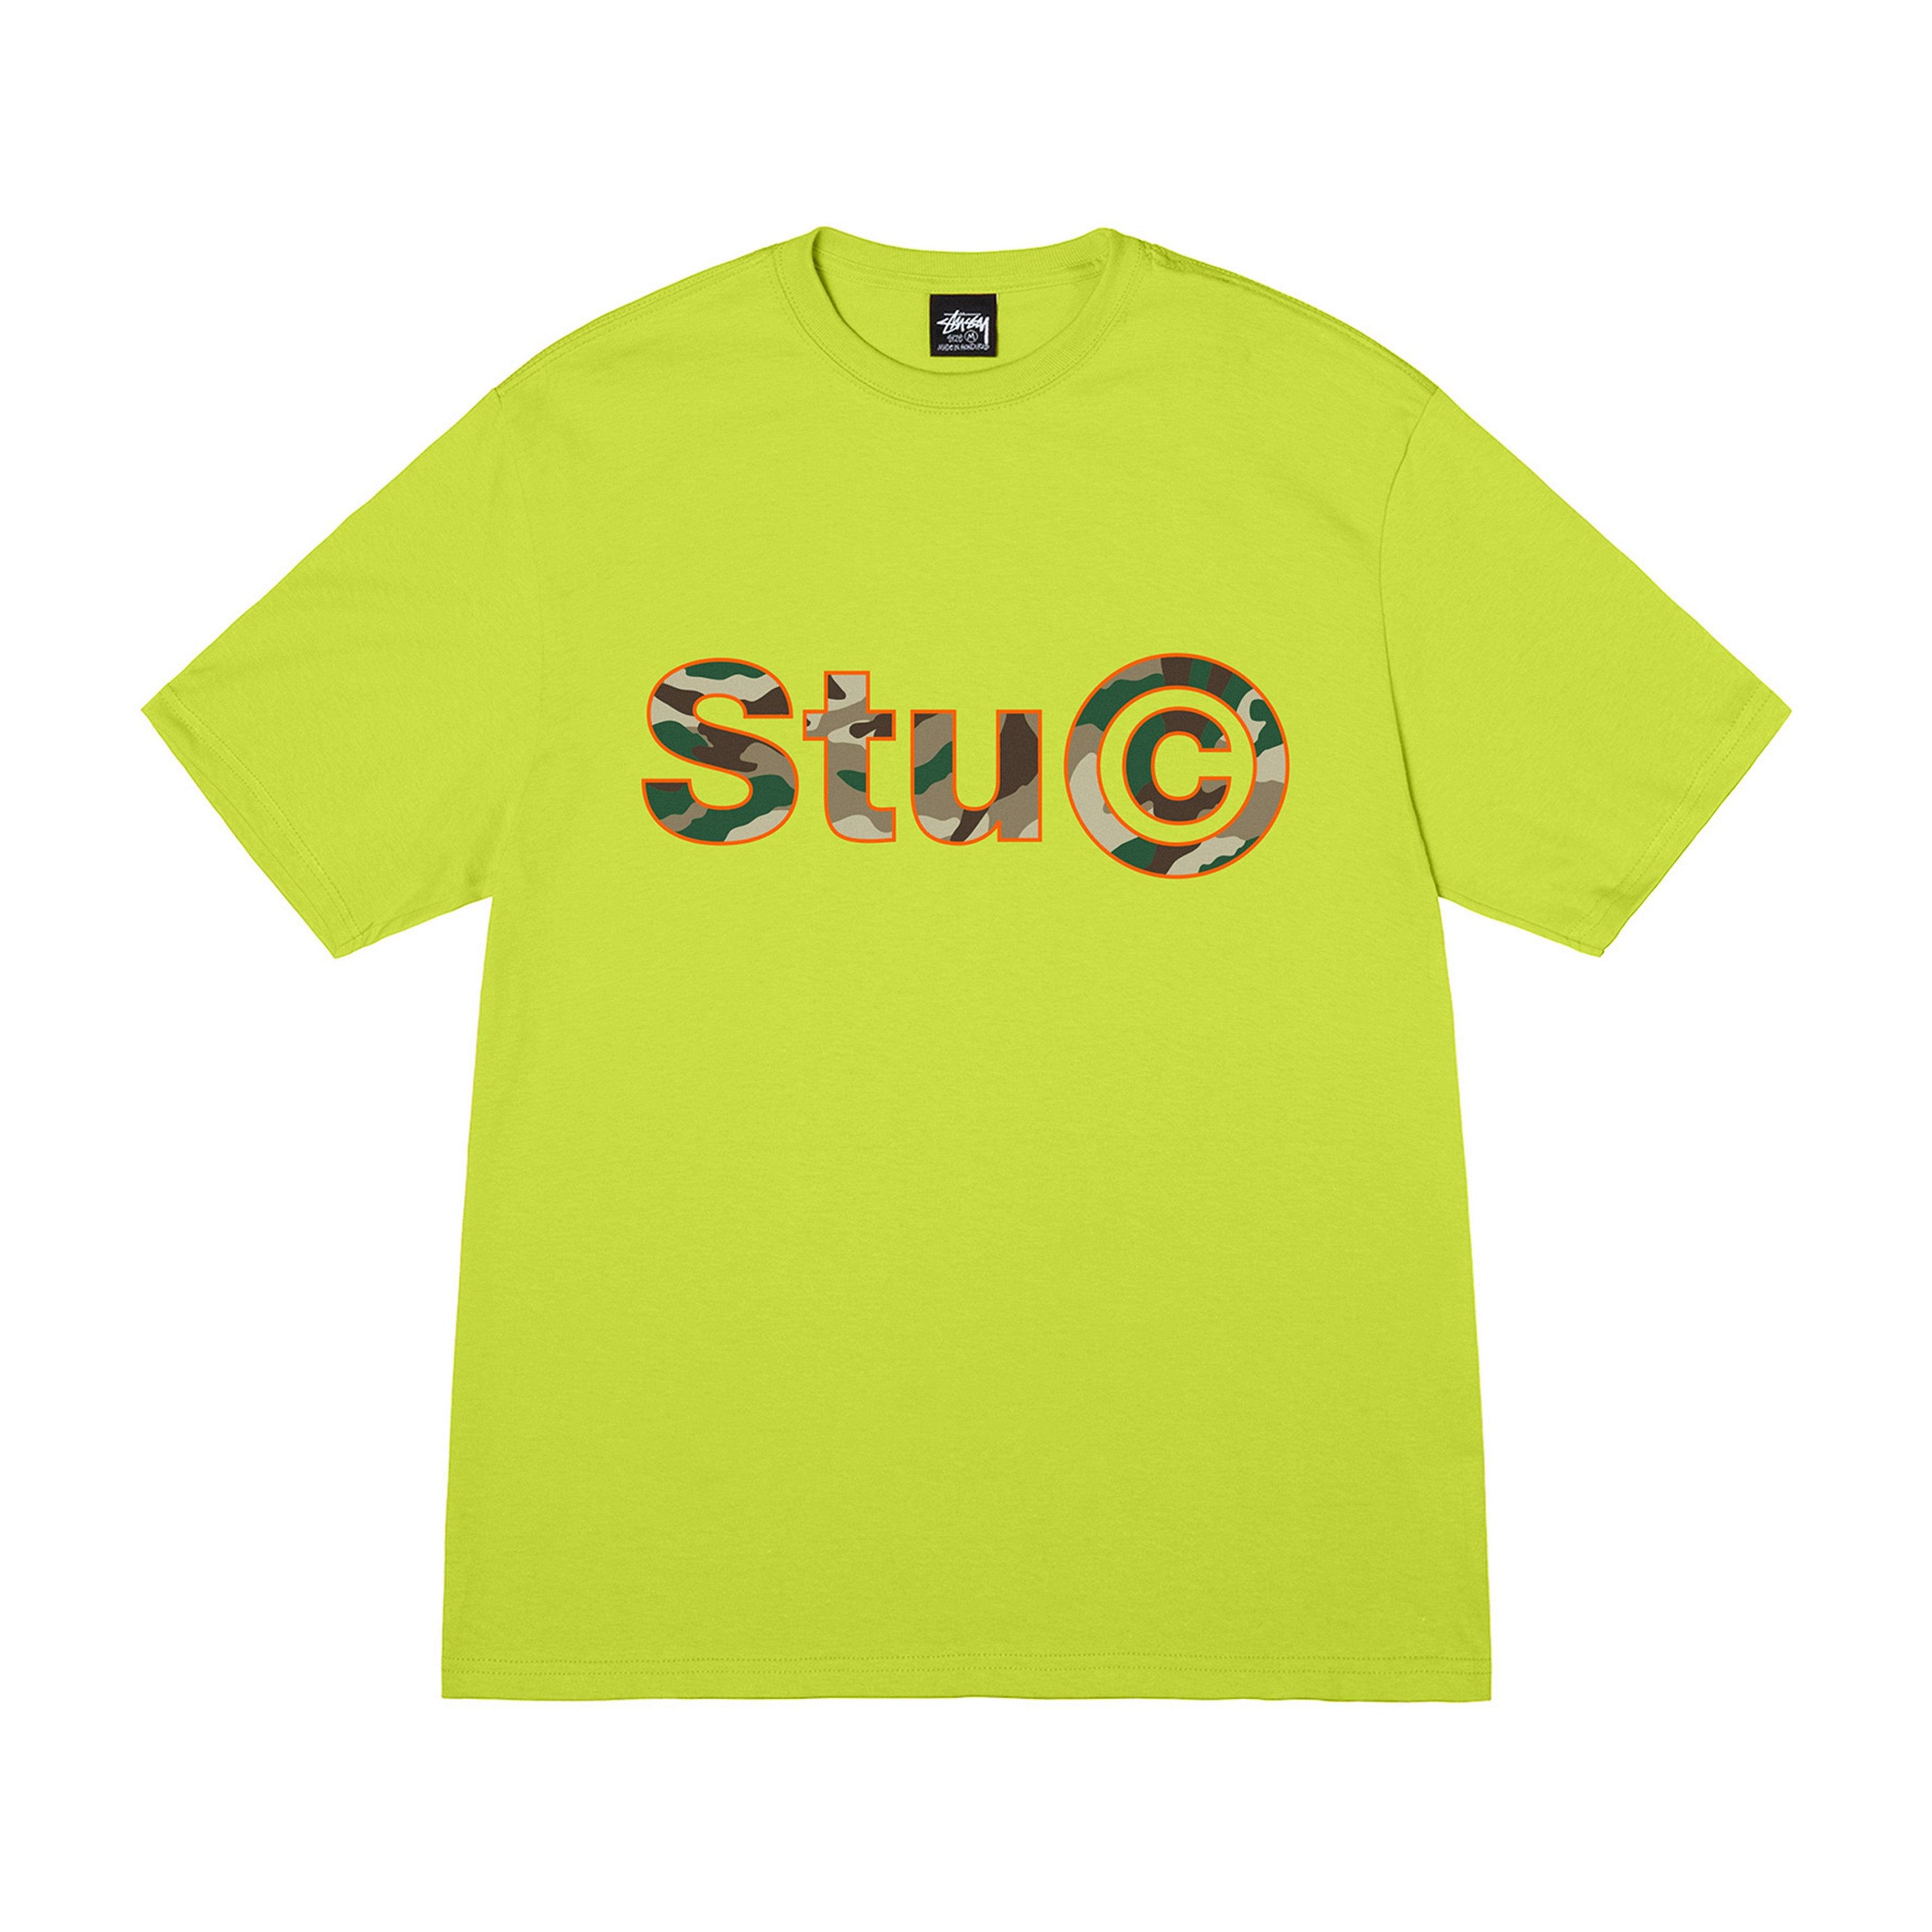 Stüssy - Stu C. Camo Tee - (Keylime) by STUSSY